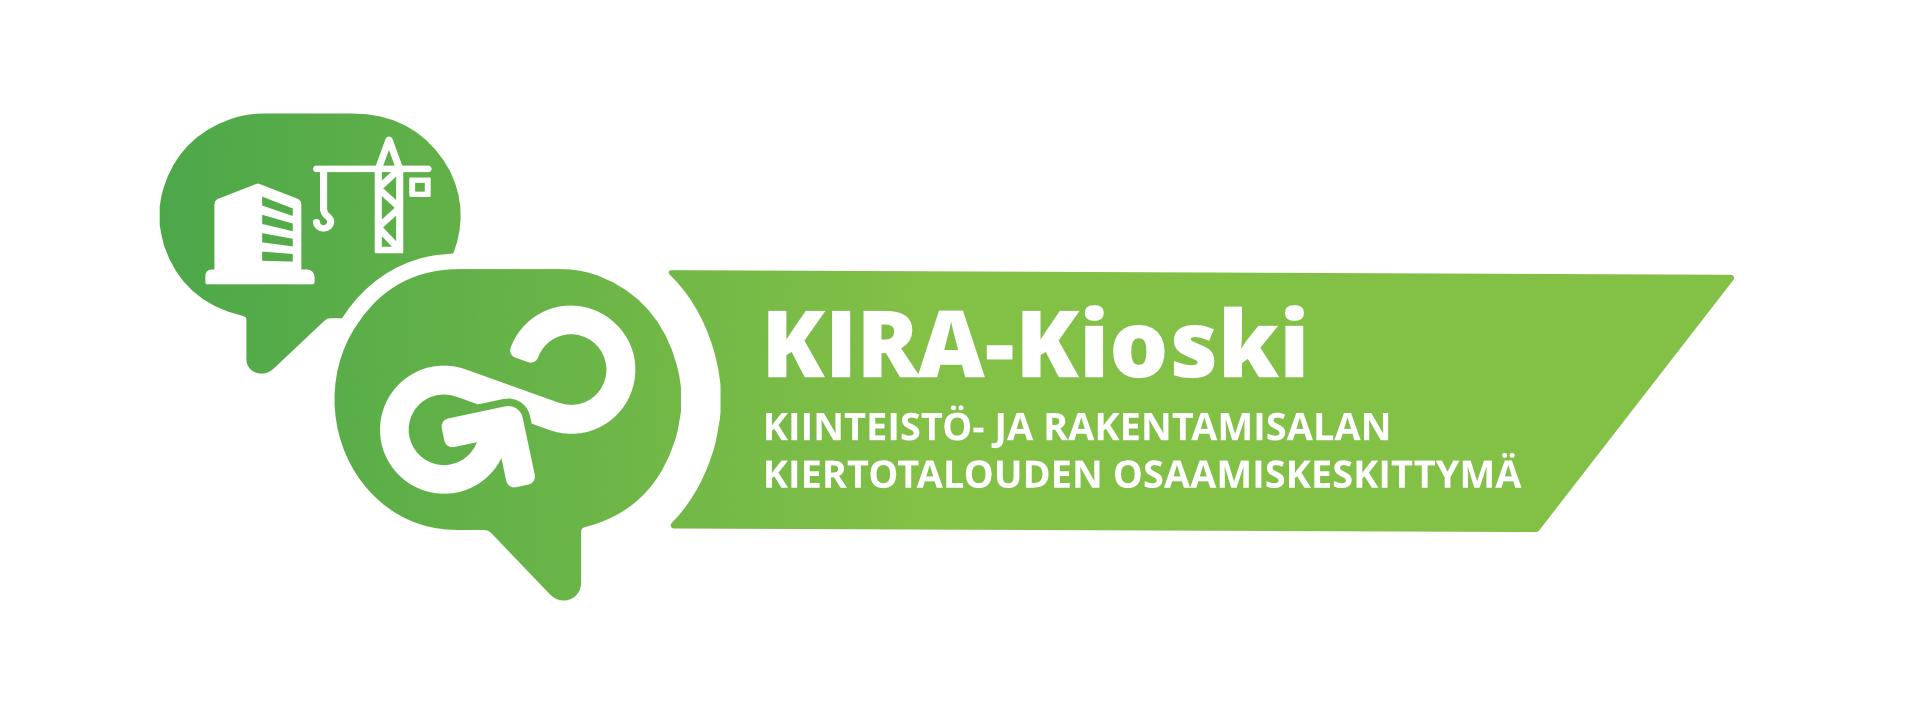 KIRA-Kioskin logo